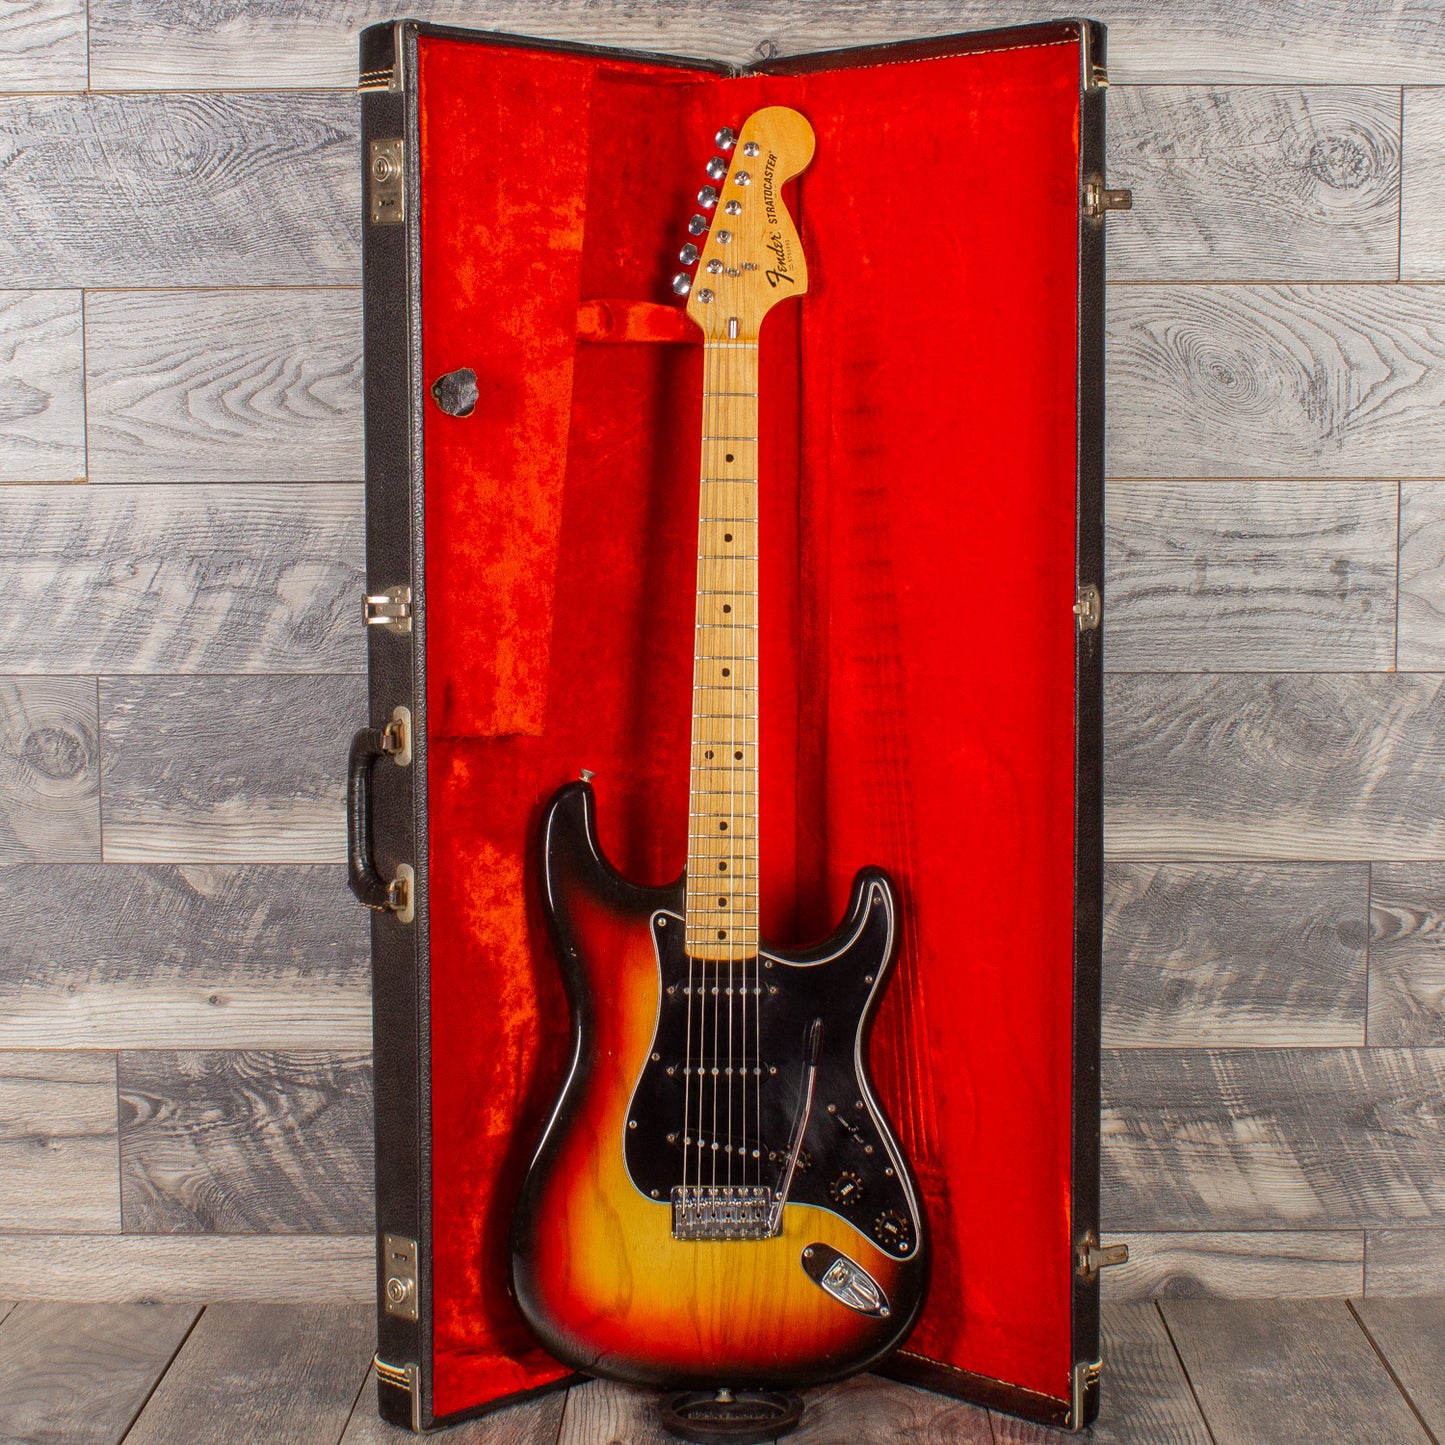 1977 Fender Stratocaster